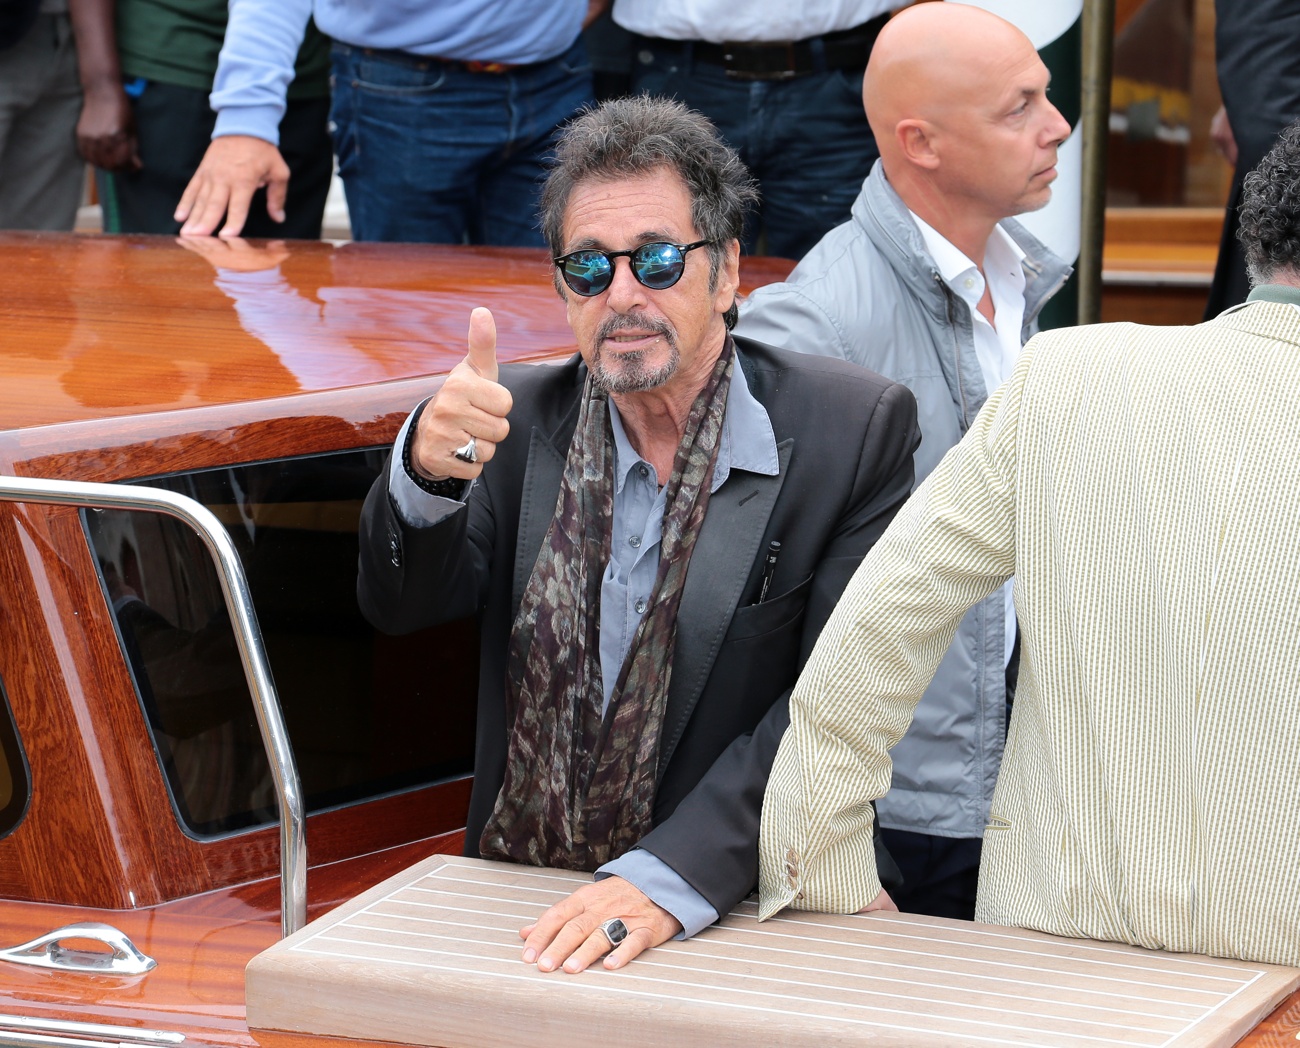 Al Pacino bereitet sich wieder auf die Vaterschaft vor: nach 22 Jahren ist sein viertes Kind unterwegs